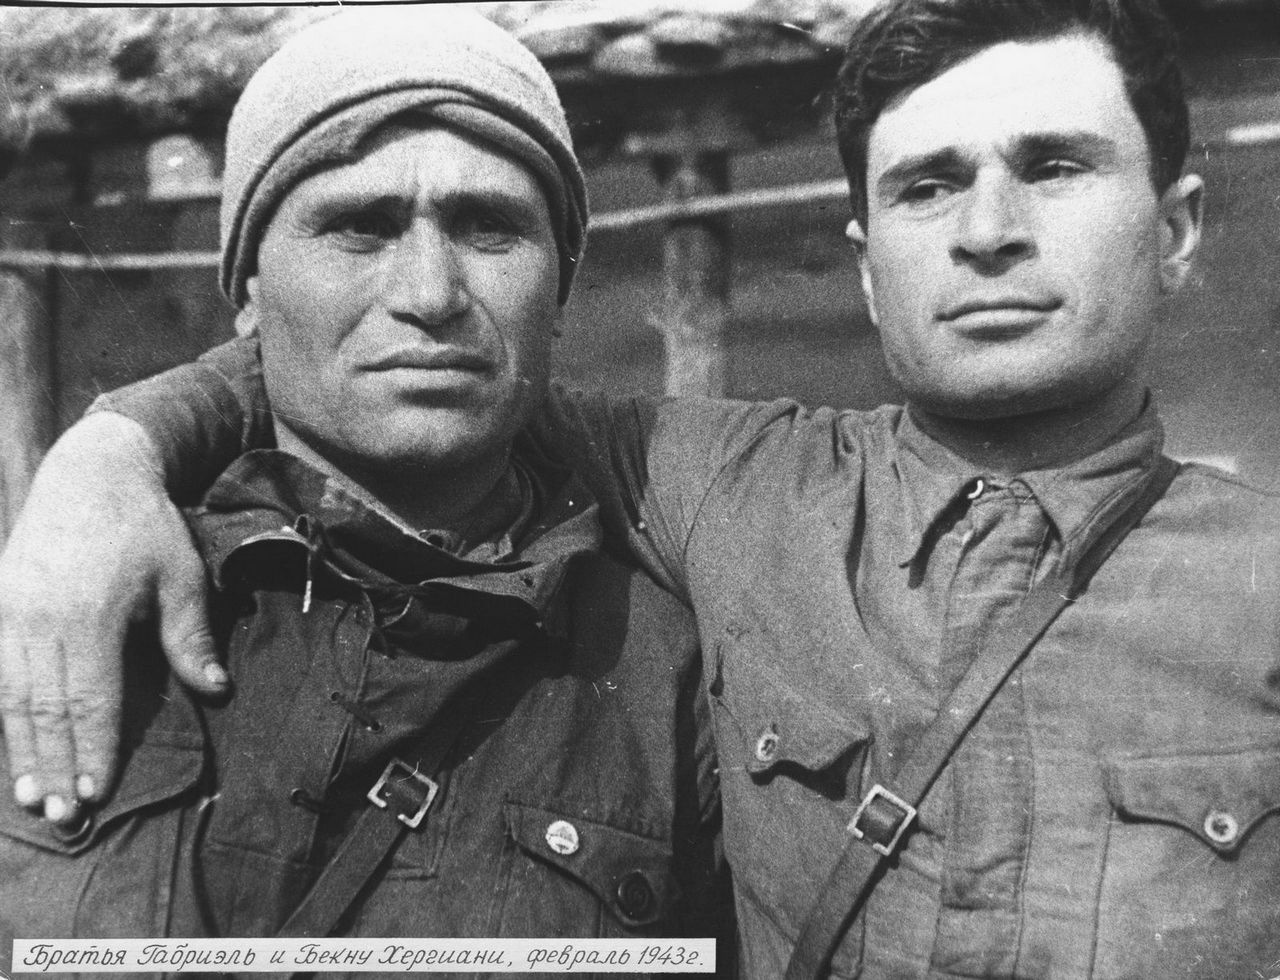 Бойцы Сванского партизанского отряда Закавказского фронта братья Габриэль и Бекну Хергиани, февраль 1943 г.